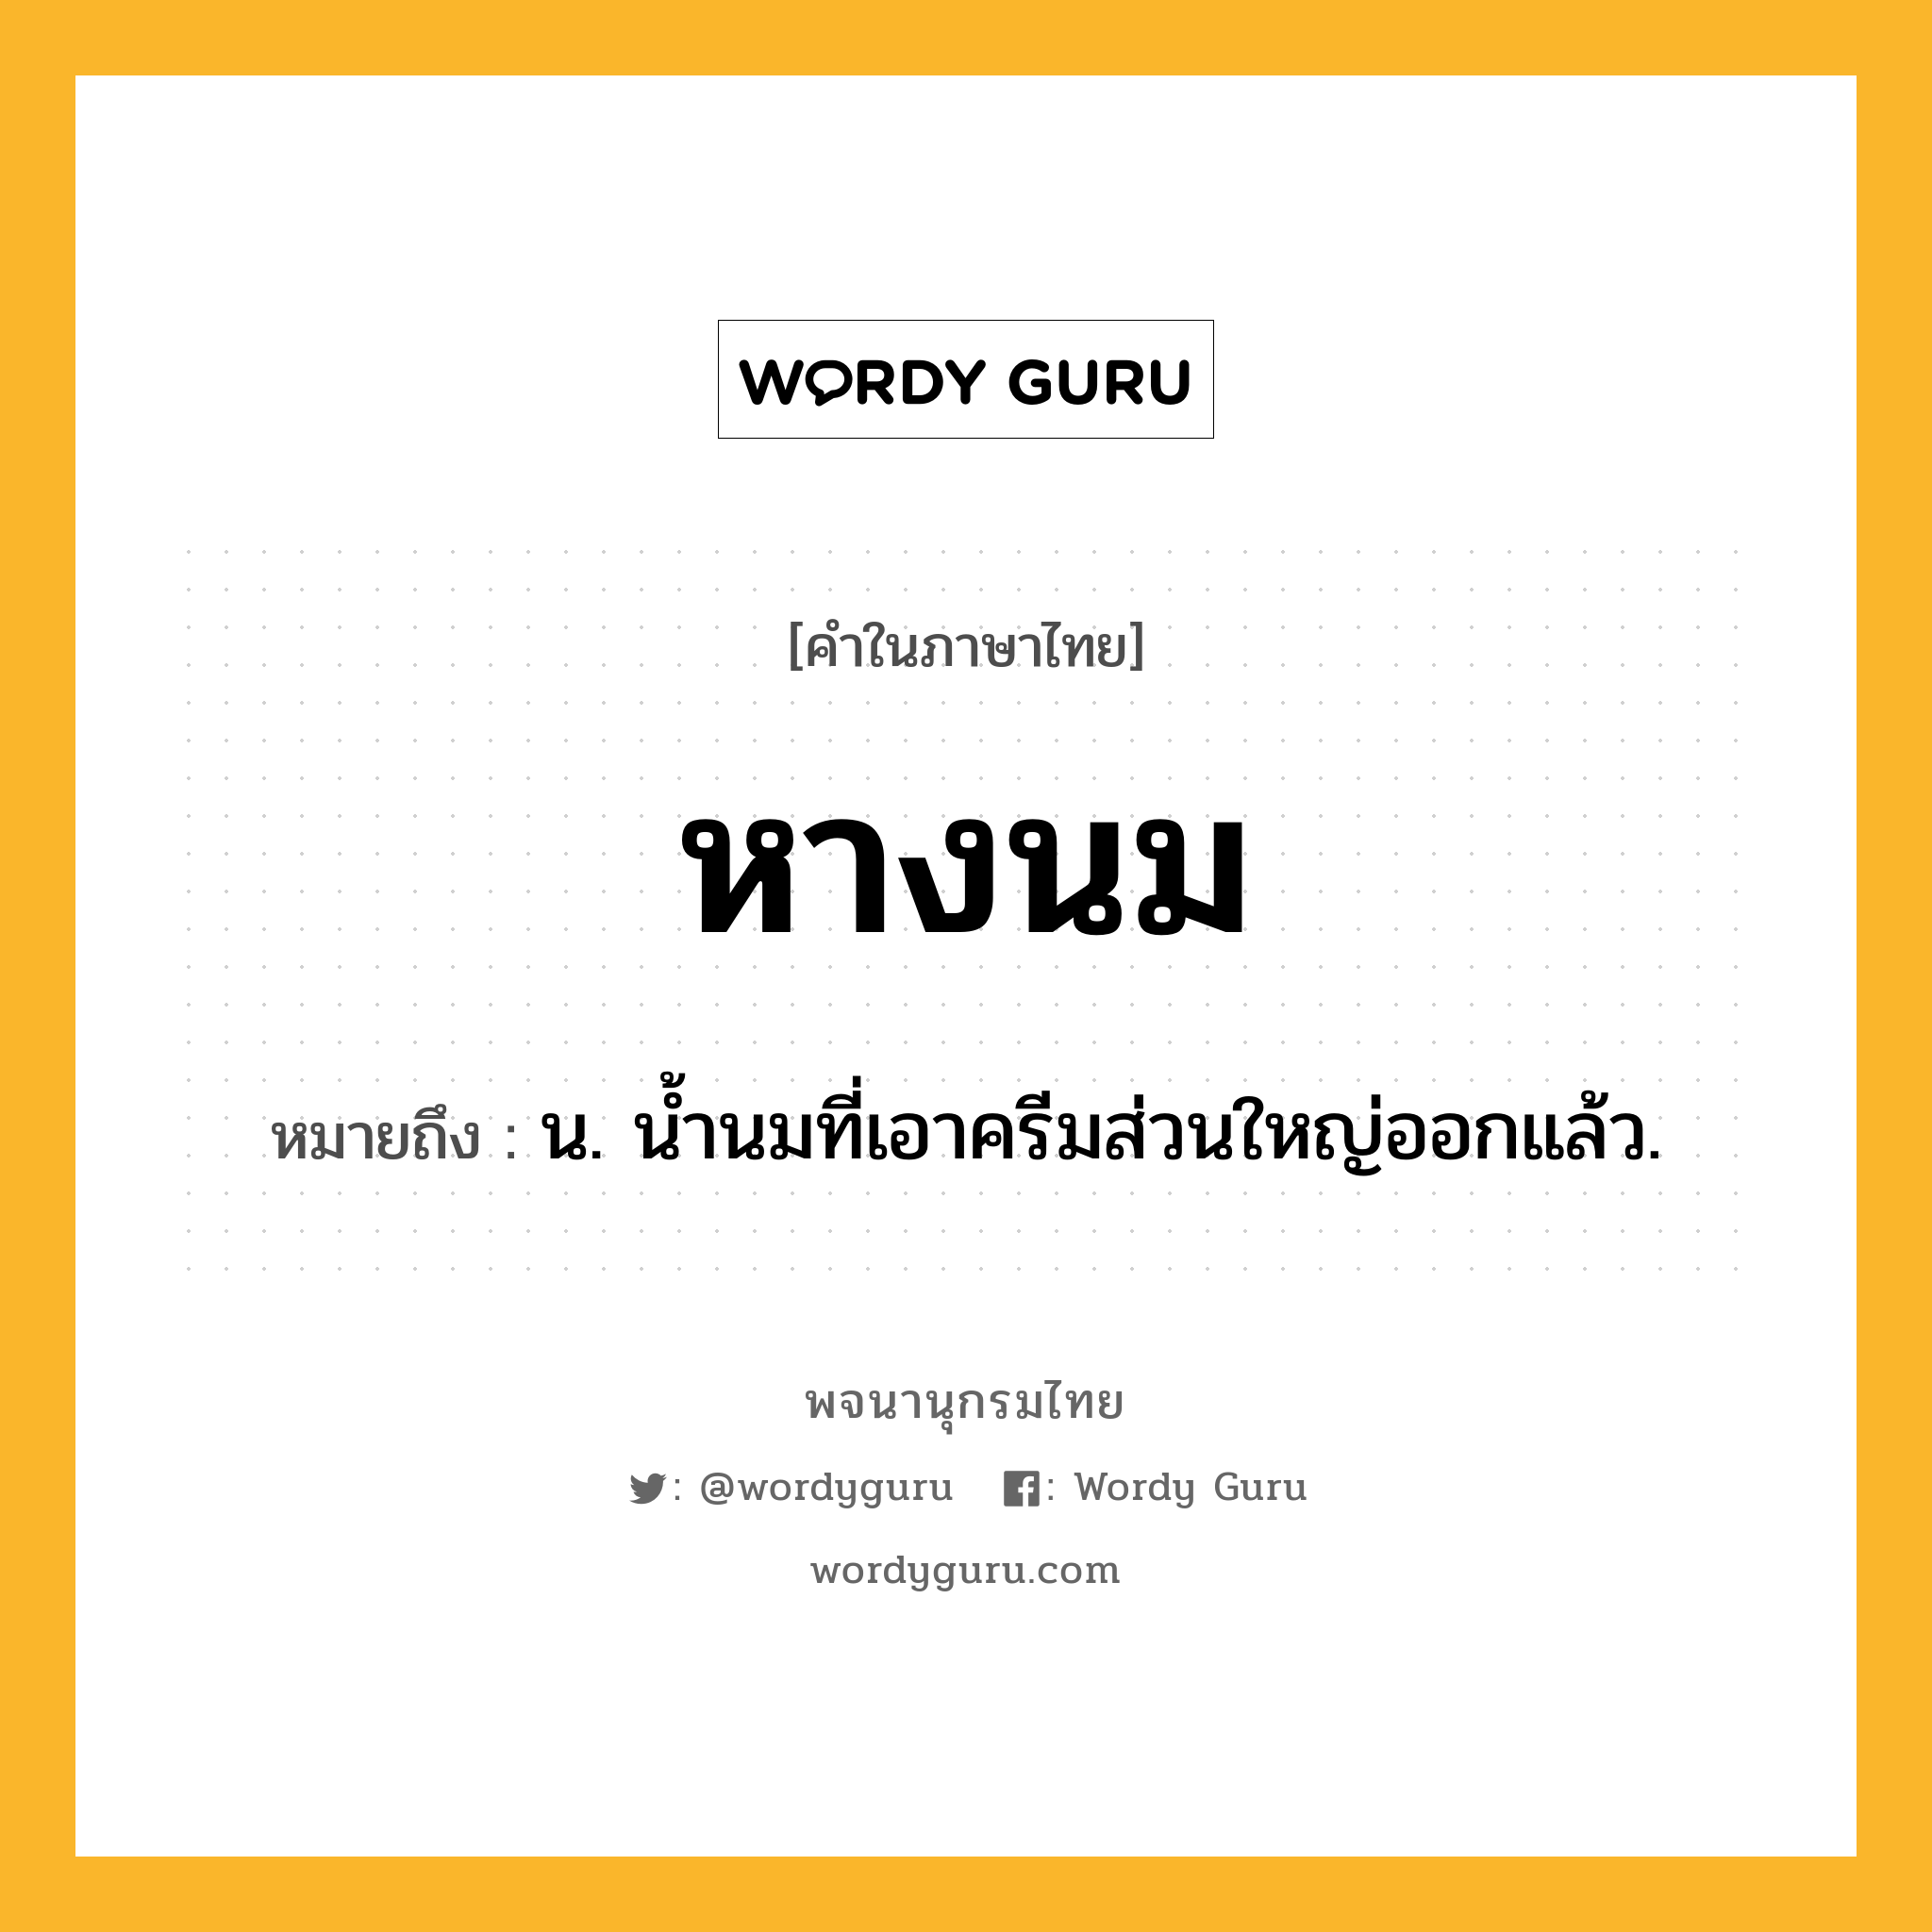 หางนม หมายถึงอะไร?, คำในภาษาไทย หางนม หมายถึง น. น้ำนมที่เอาครีมส่วนใหญ่ออกแล้ว.